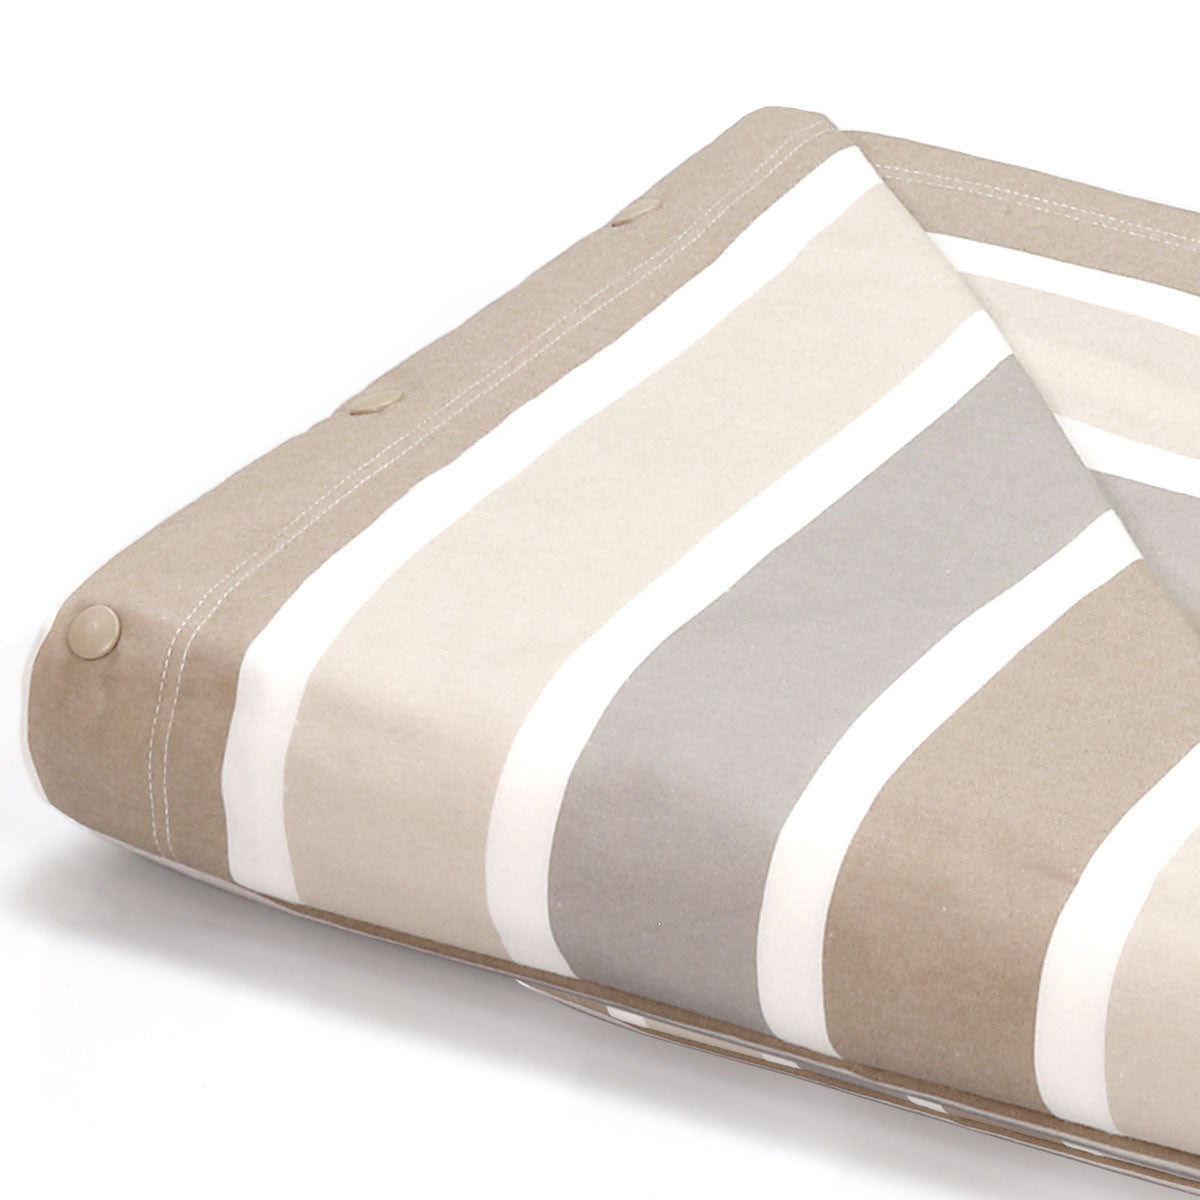 Completo letto flanella 2 piazze con fantasia moderna a righe sabbia tortora e grigio